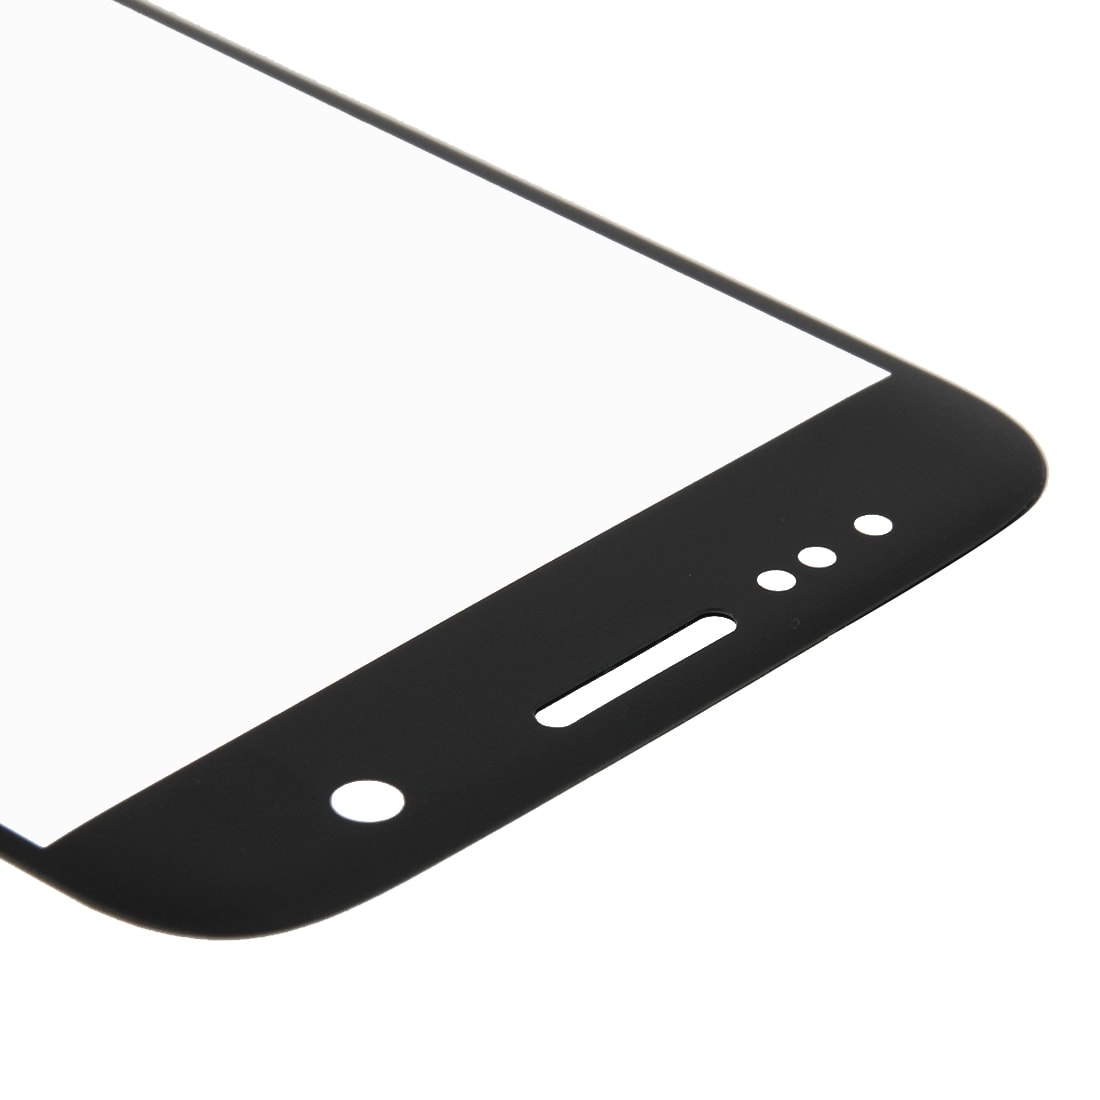 Displayglas voor Samsung Galaxy S7 - Zwart